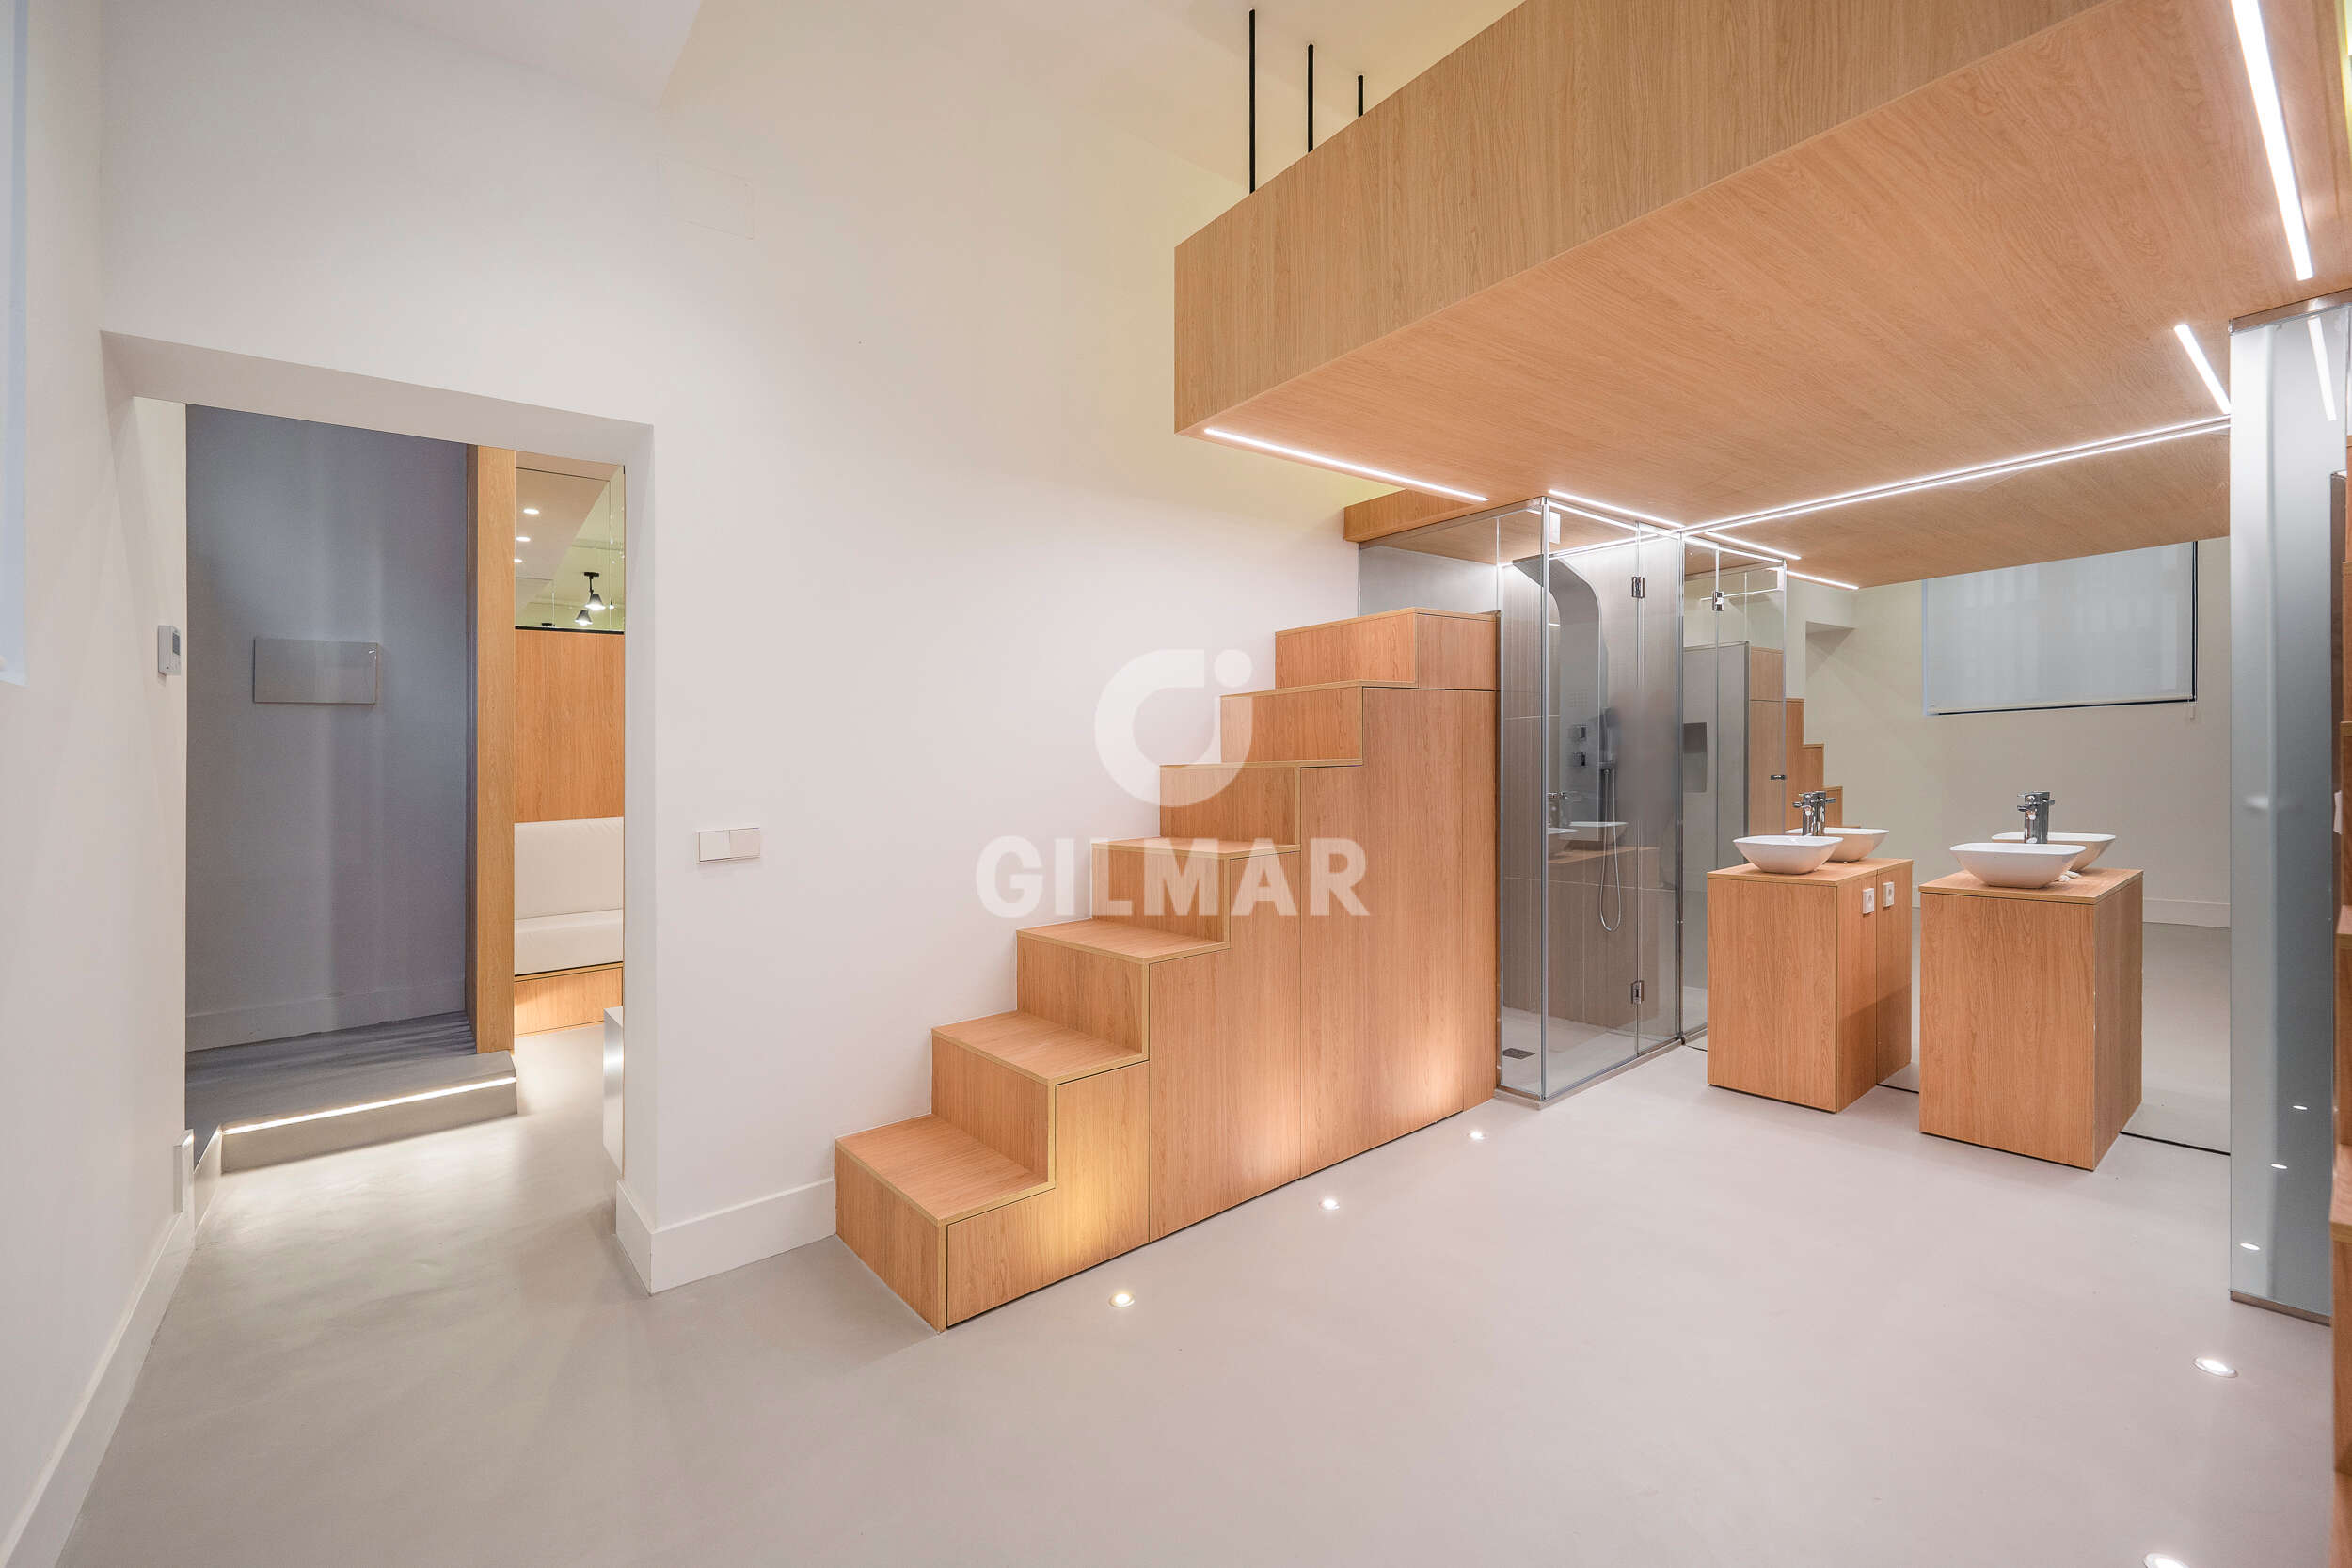 Apartamento en venta en El Viso – Madrid | Gilmar Consulting